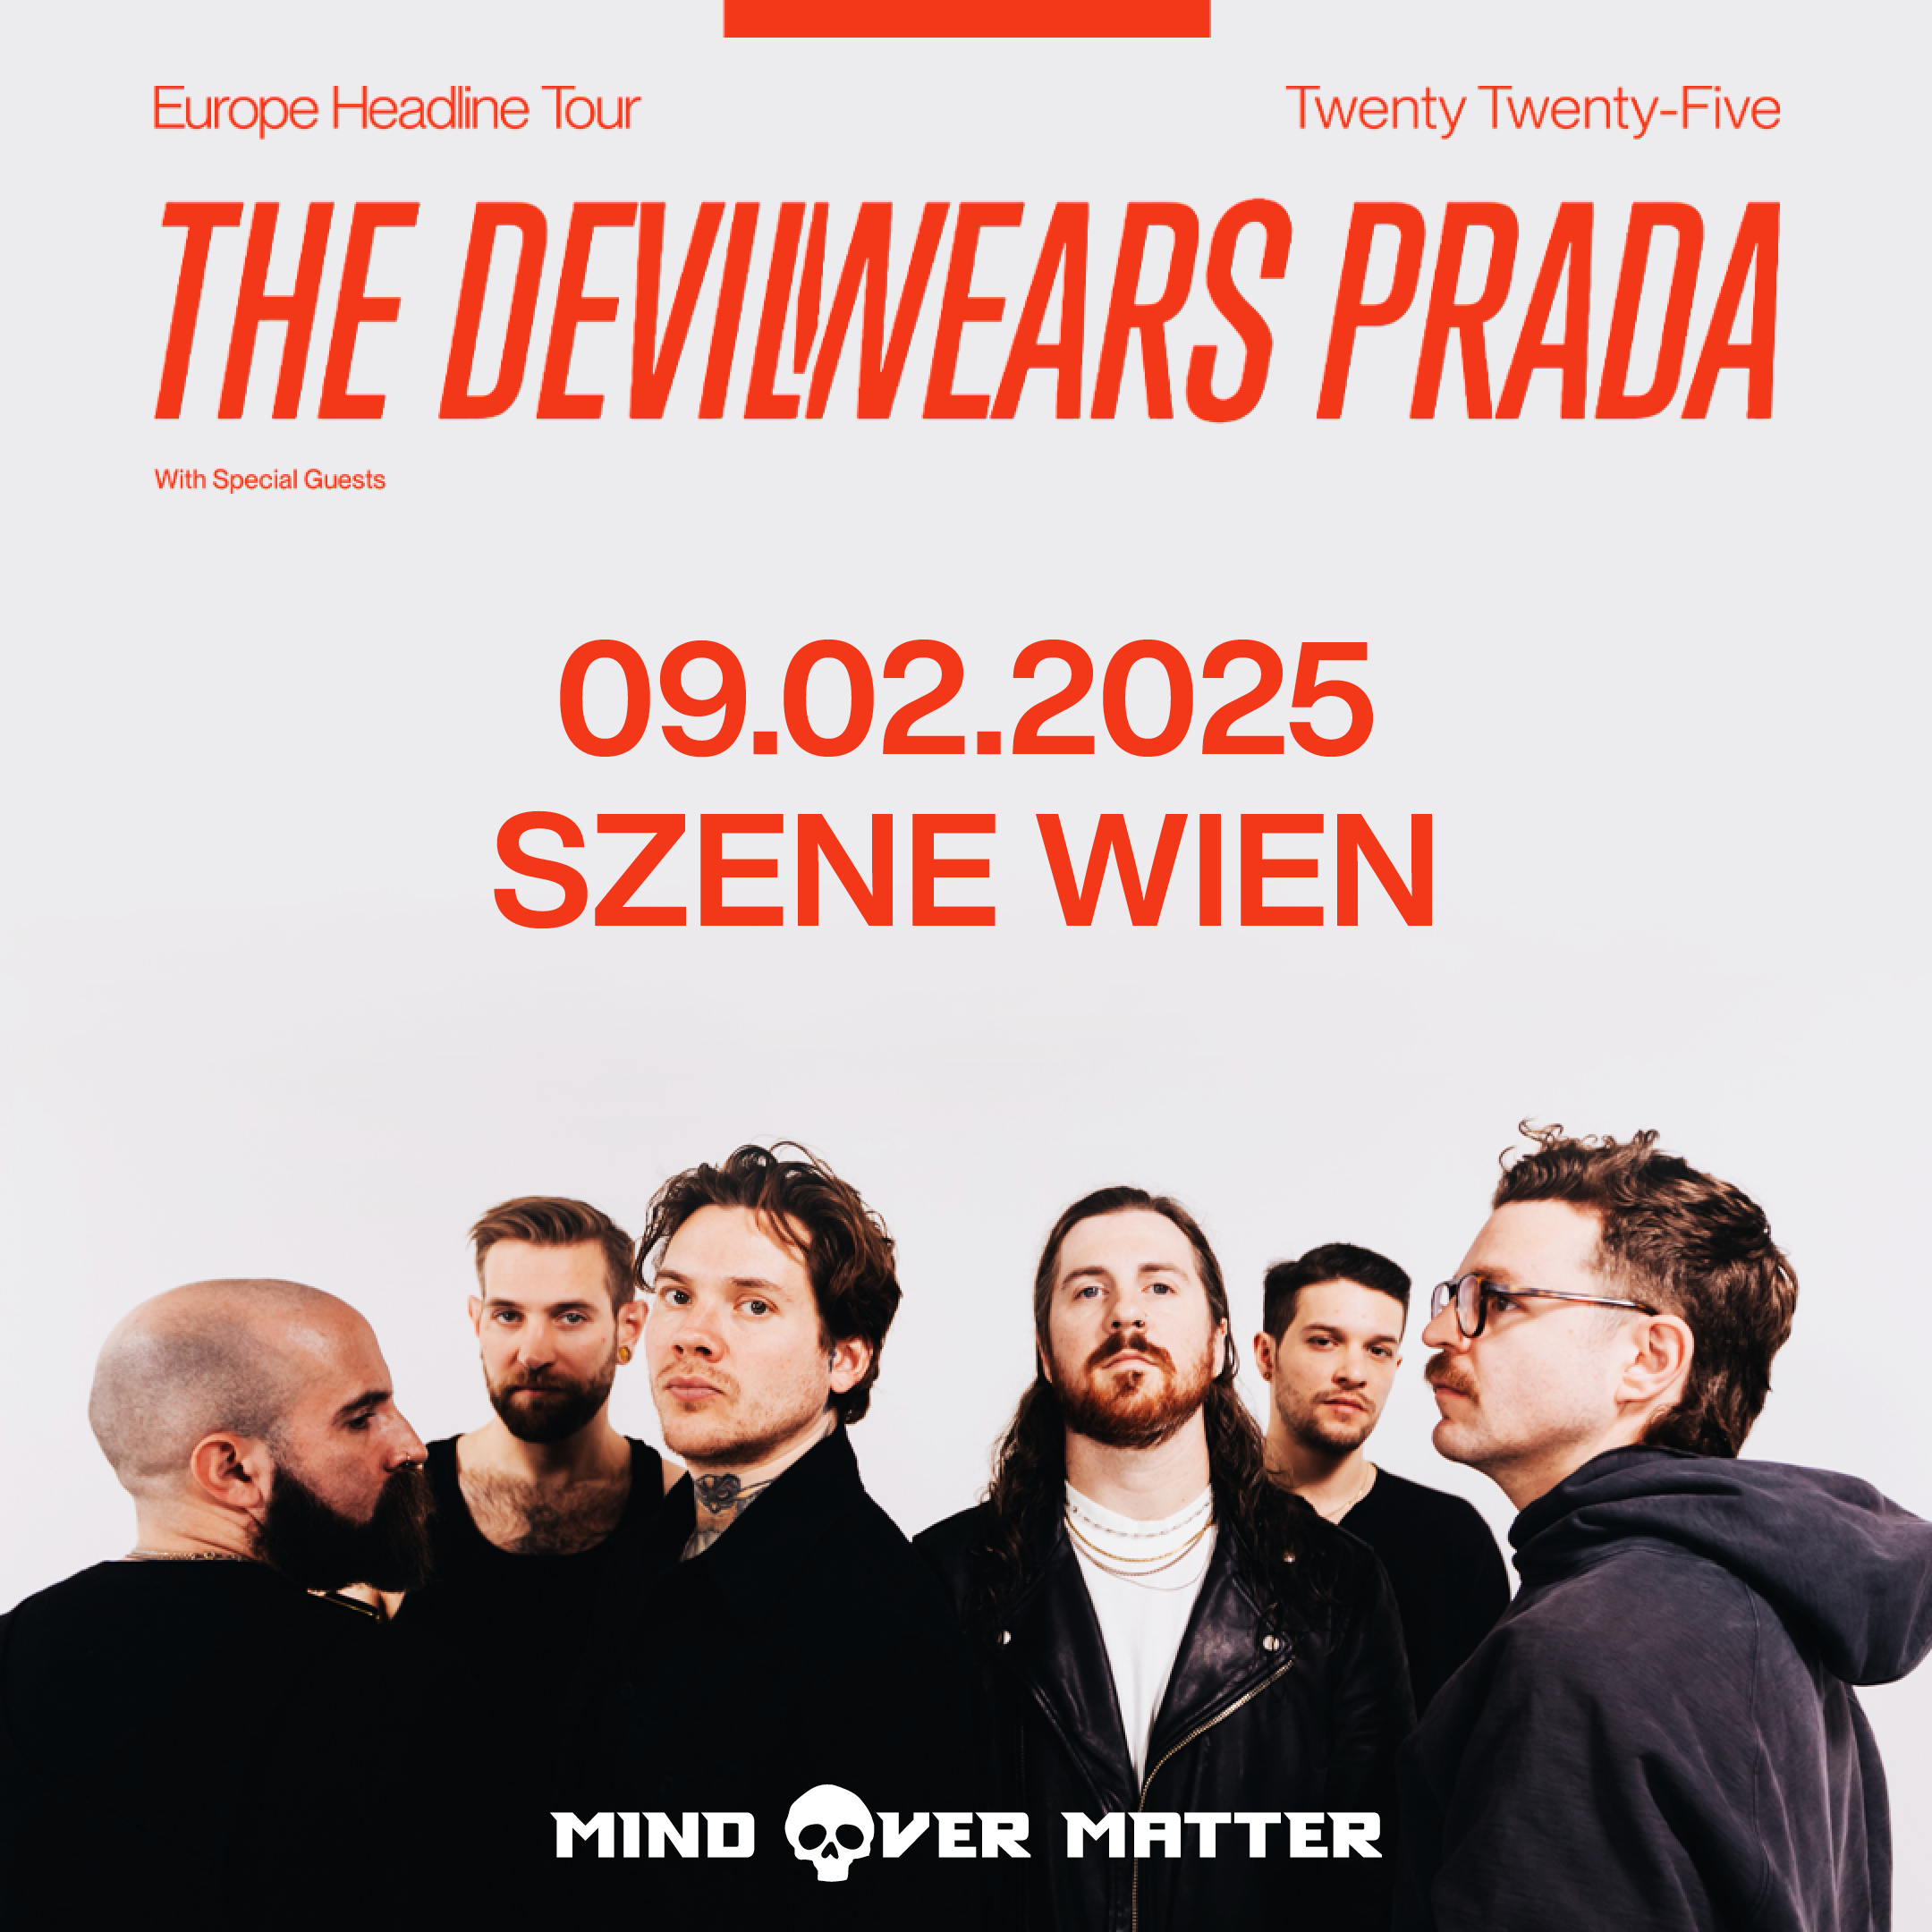 The Devil Wears Prada am 9. February 2025 @ Szene Wien.